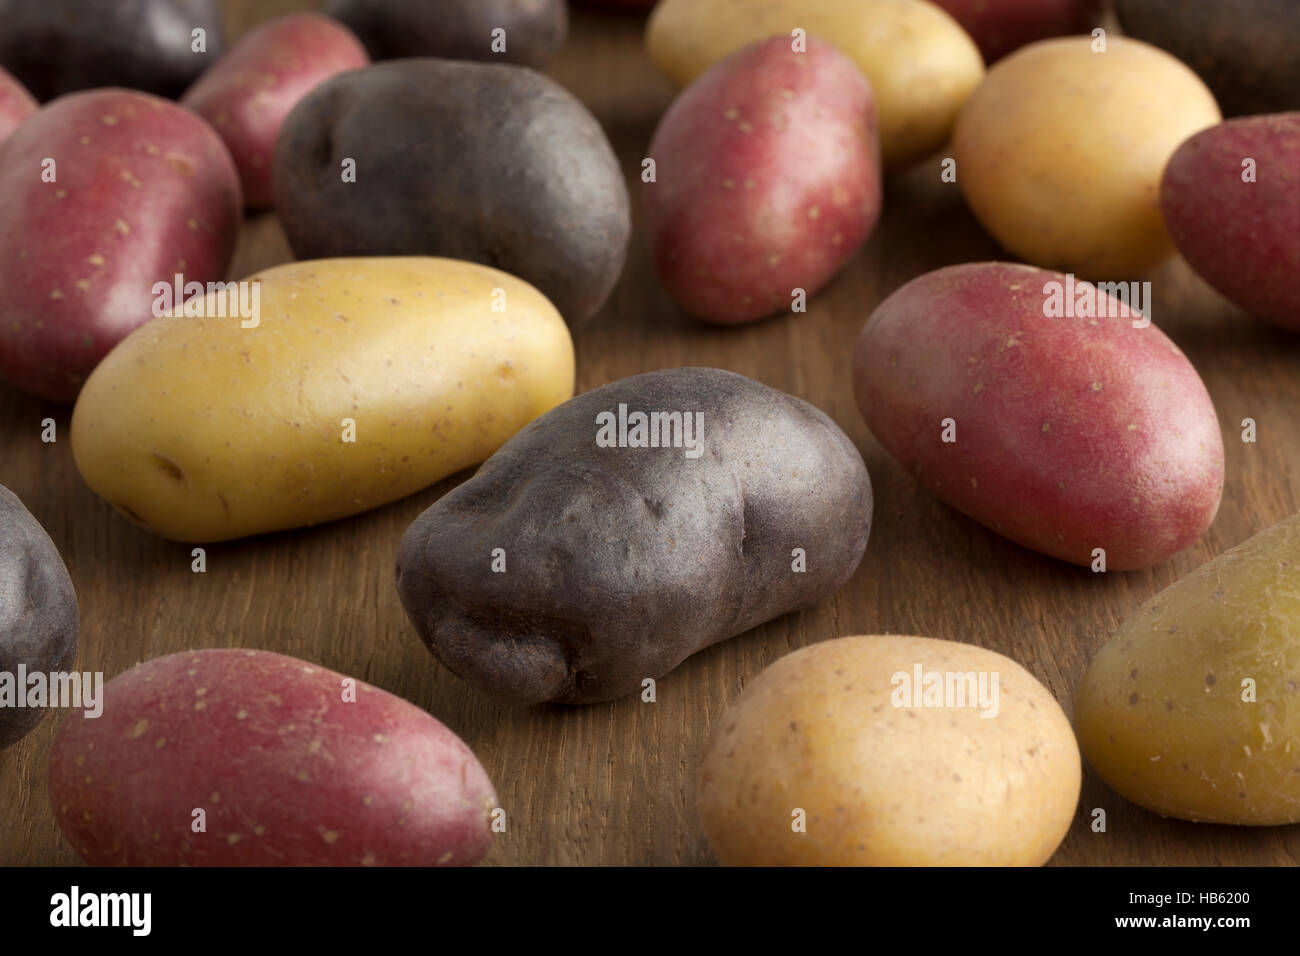 Variété de pommes de terre différents Banque D'Images